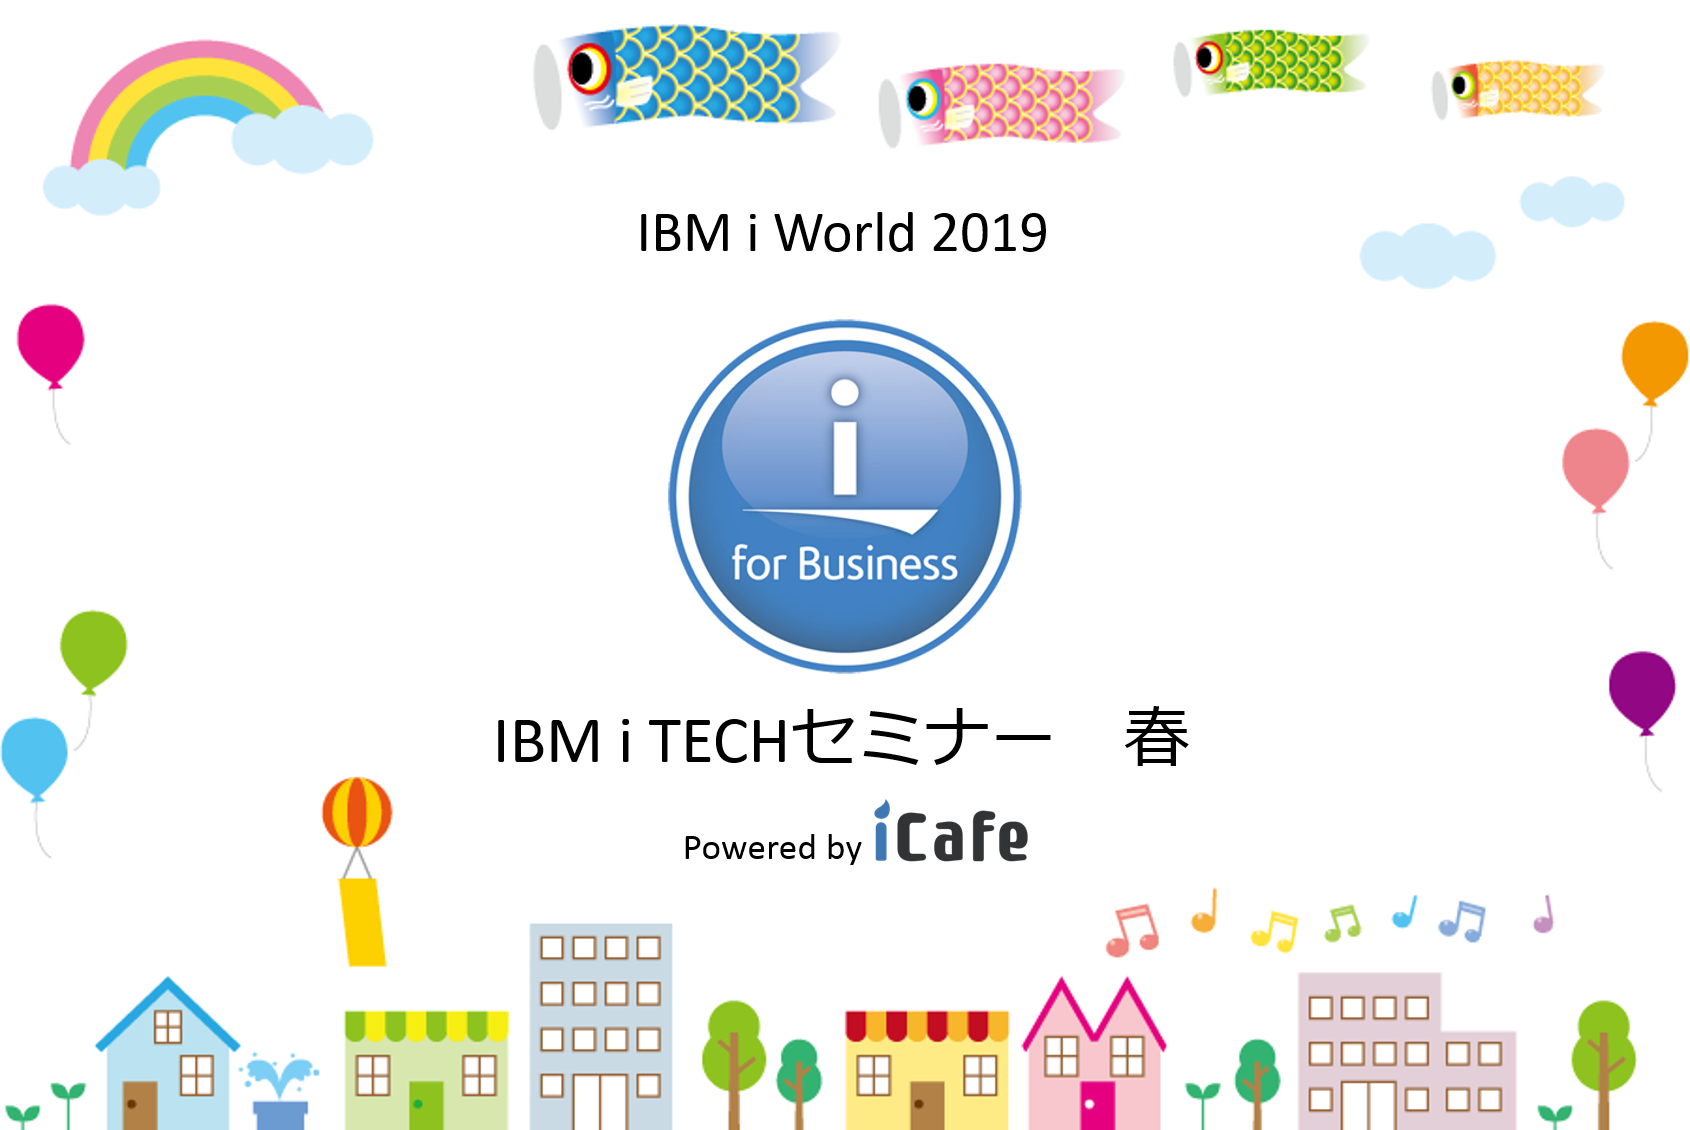 【IBM i World 2019】IBM i TECHセミナー2019春